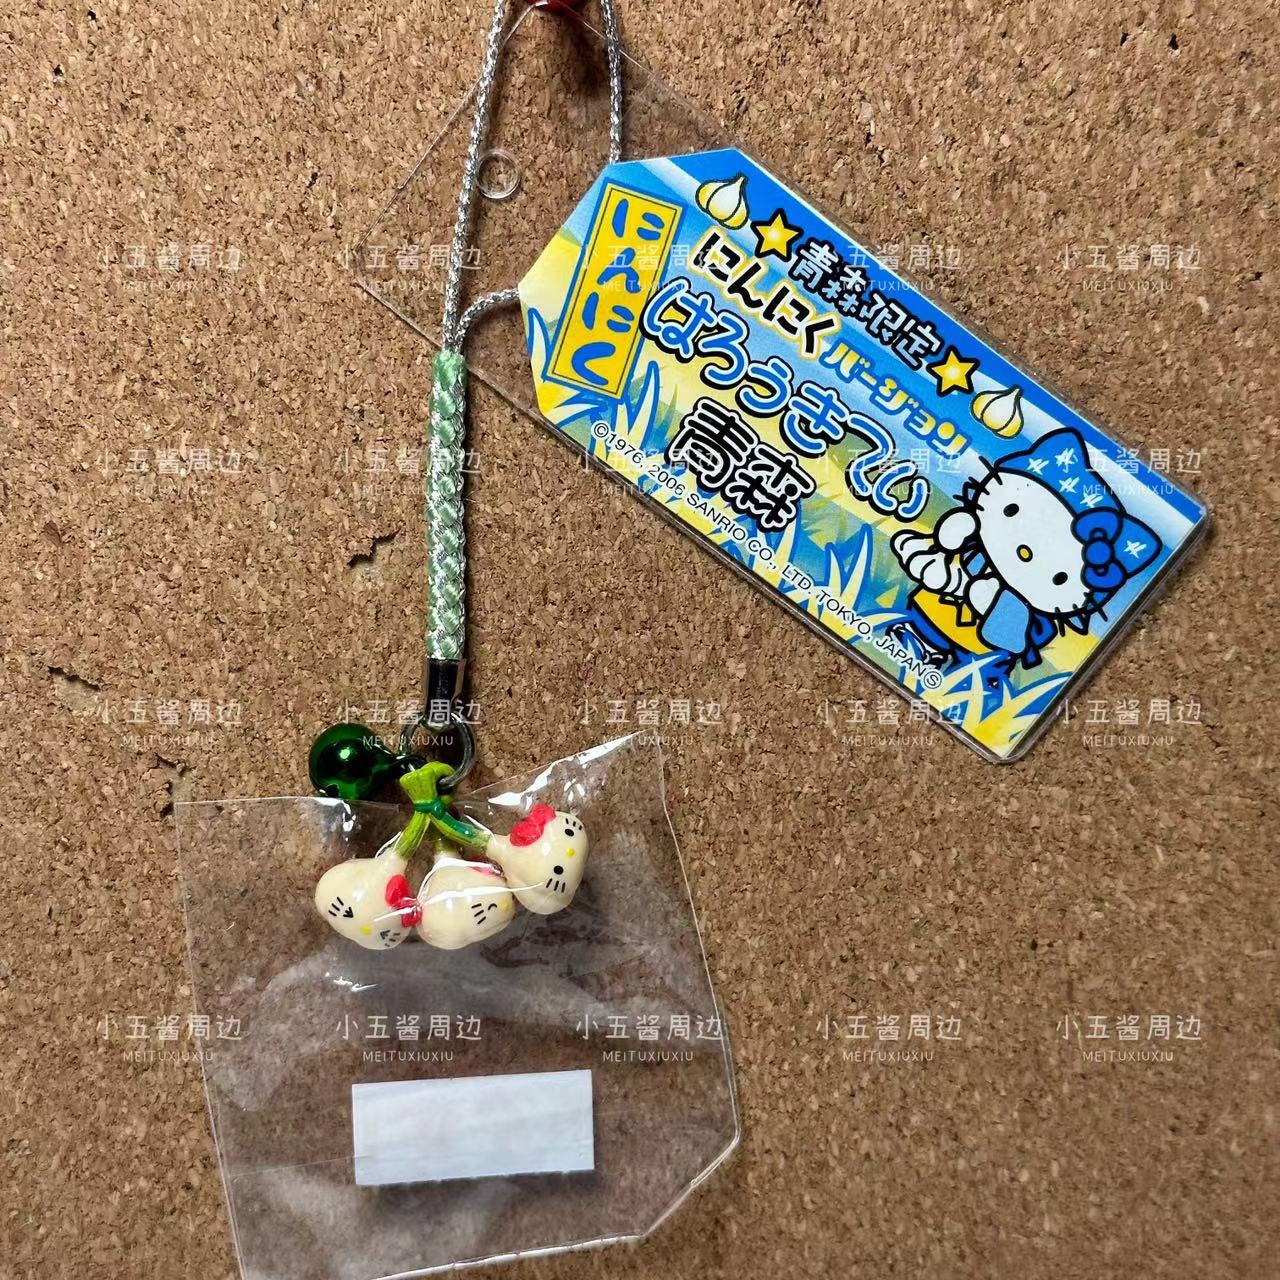 海淘代购日本地域限定Hello Kitty大蒜 三头蒜吊牌挂件公仔绝版限